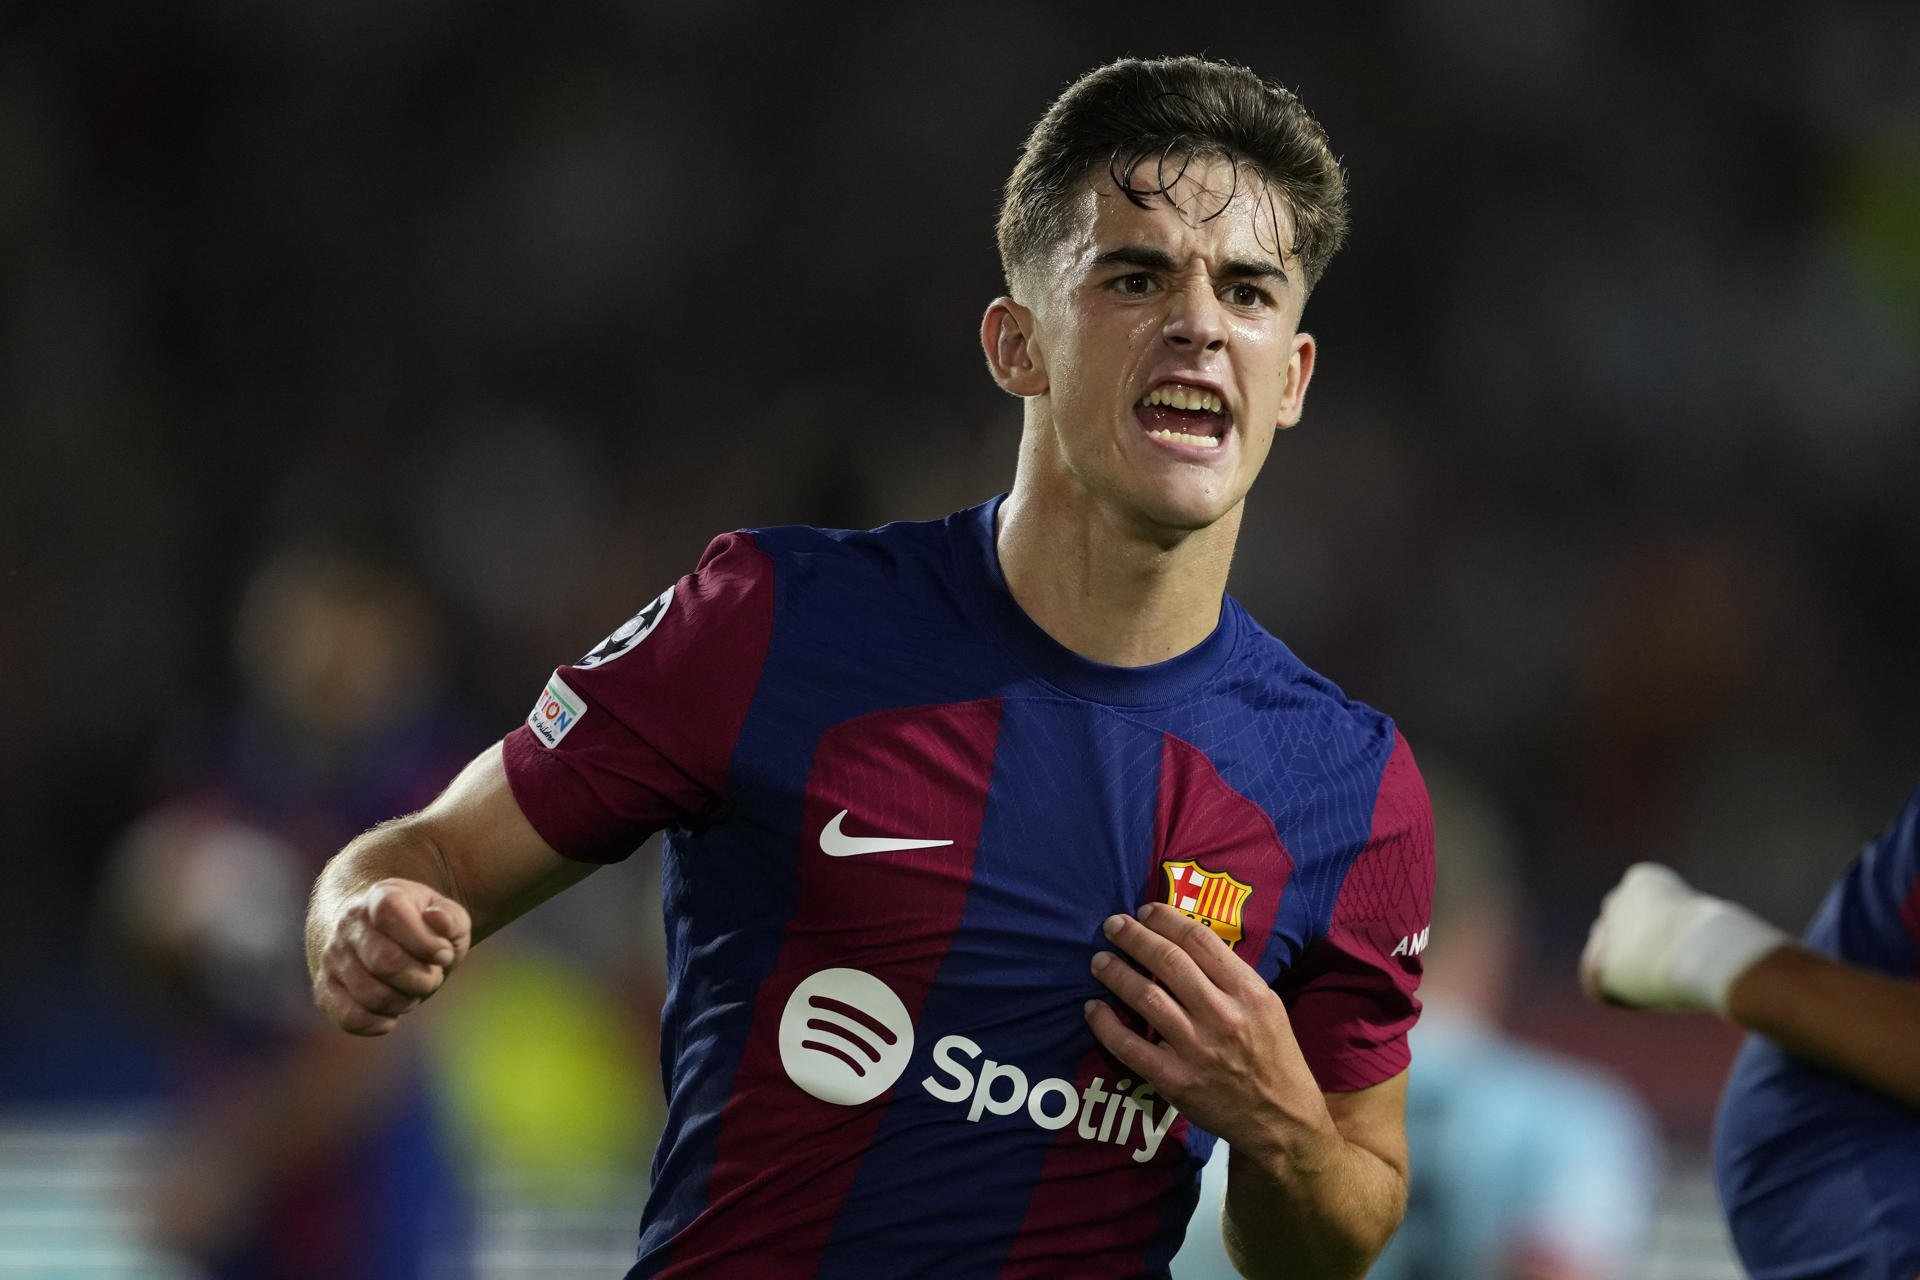 Adiós doloroso para Gavi, el Barça acepta la negociación, KO